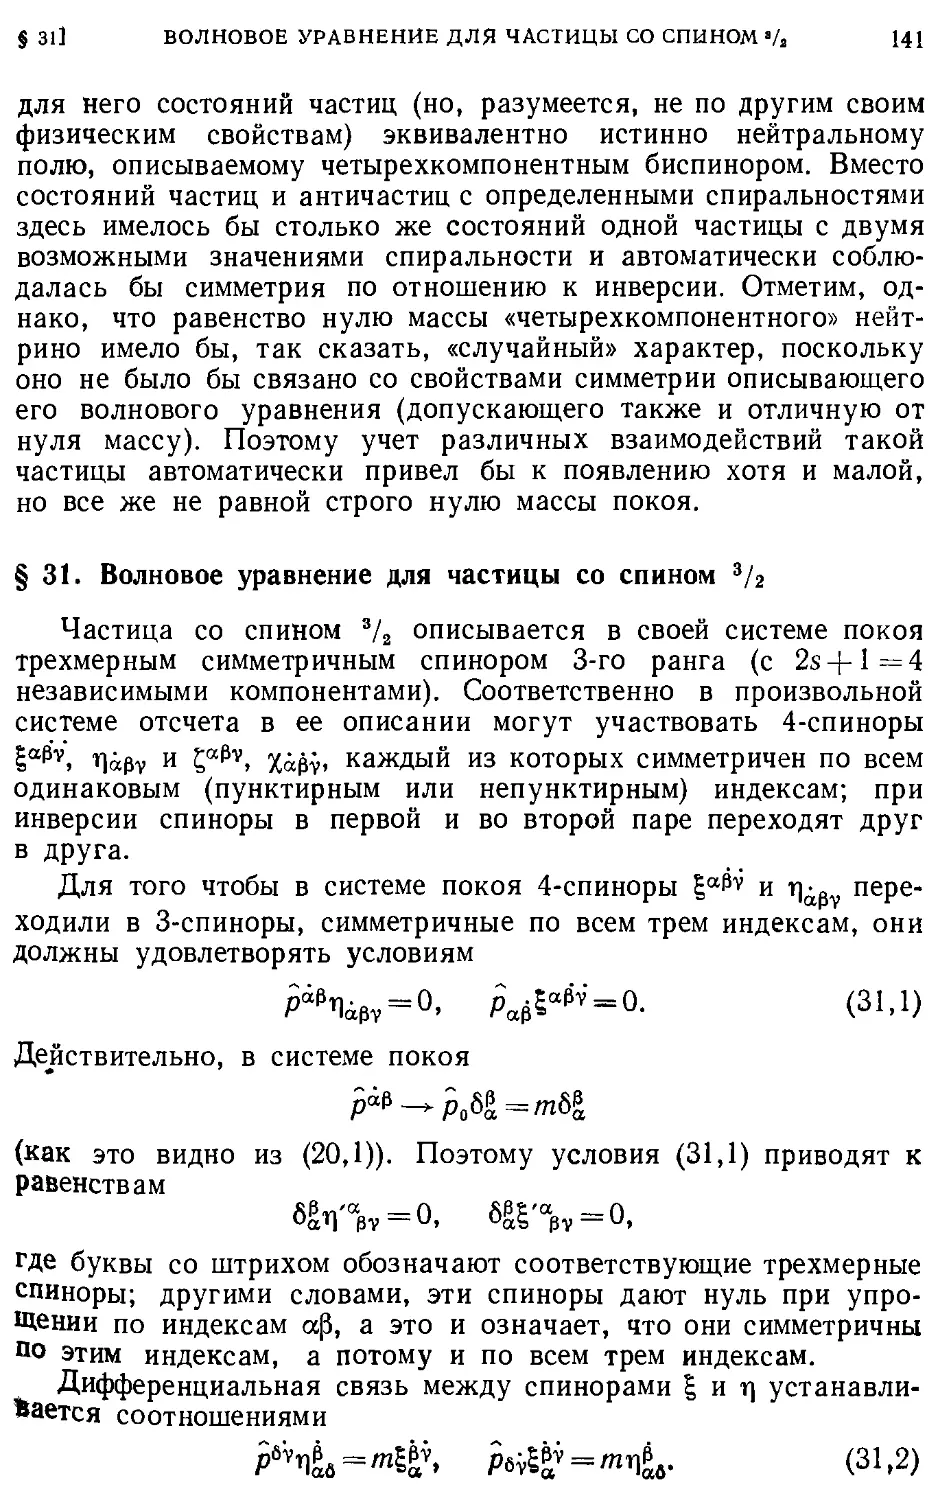 § 31. Волновое уравнение для частицы со спином 3/2